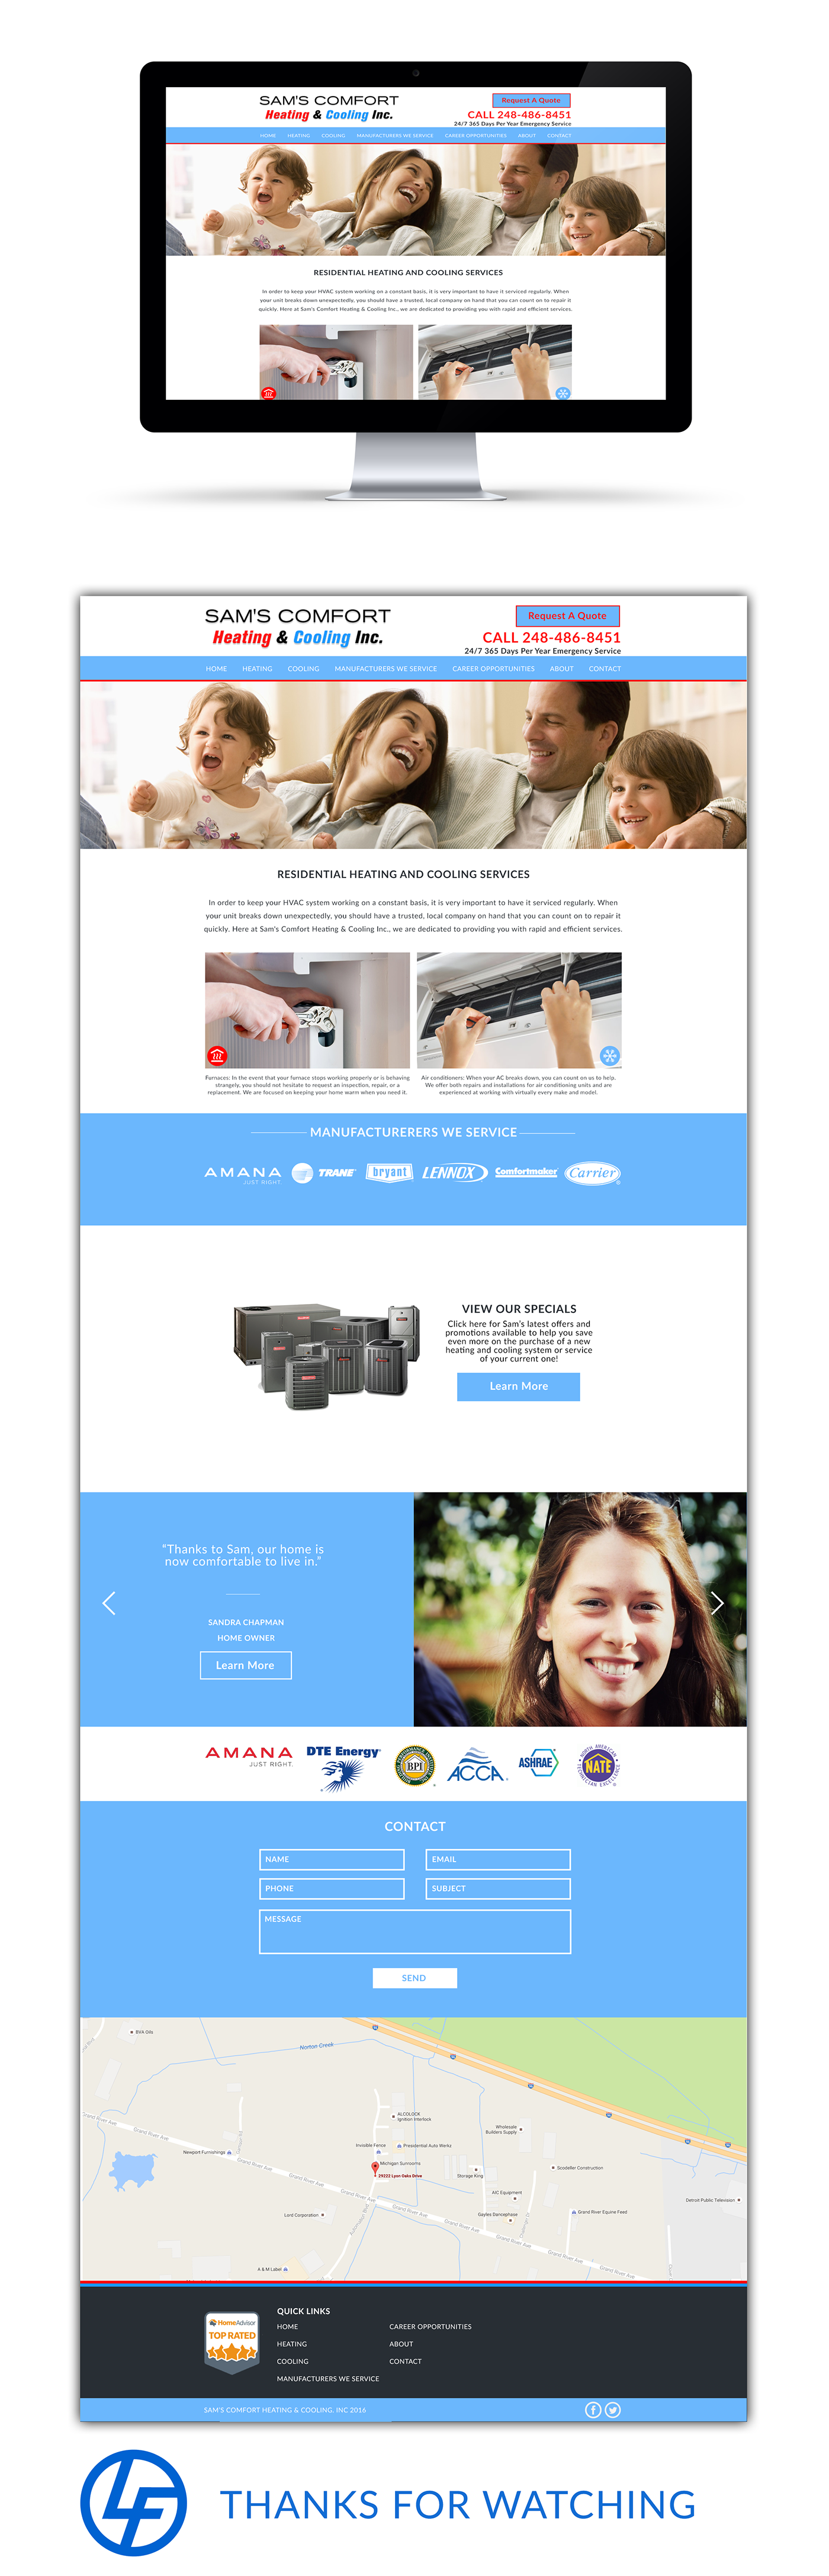 Web design site redesign compnay industrial designer